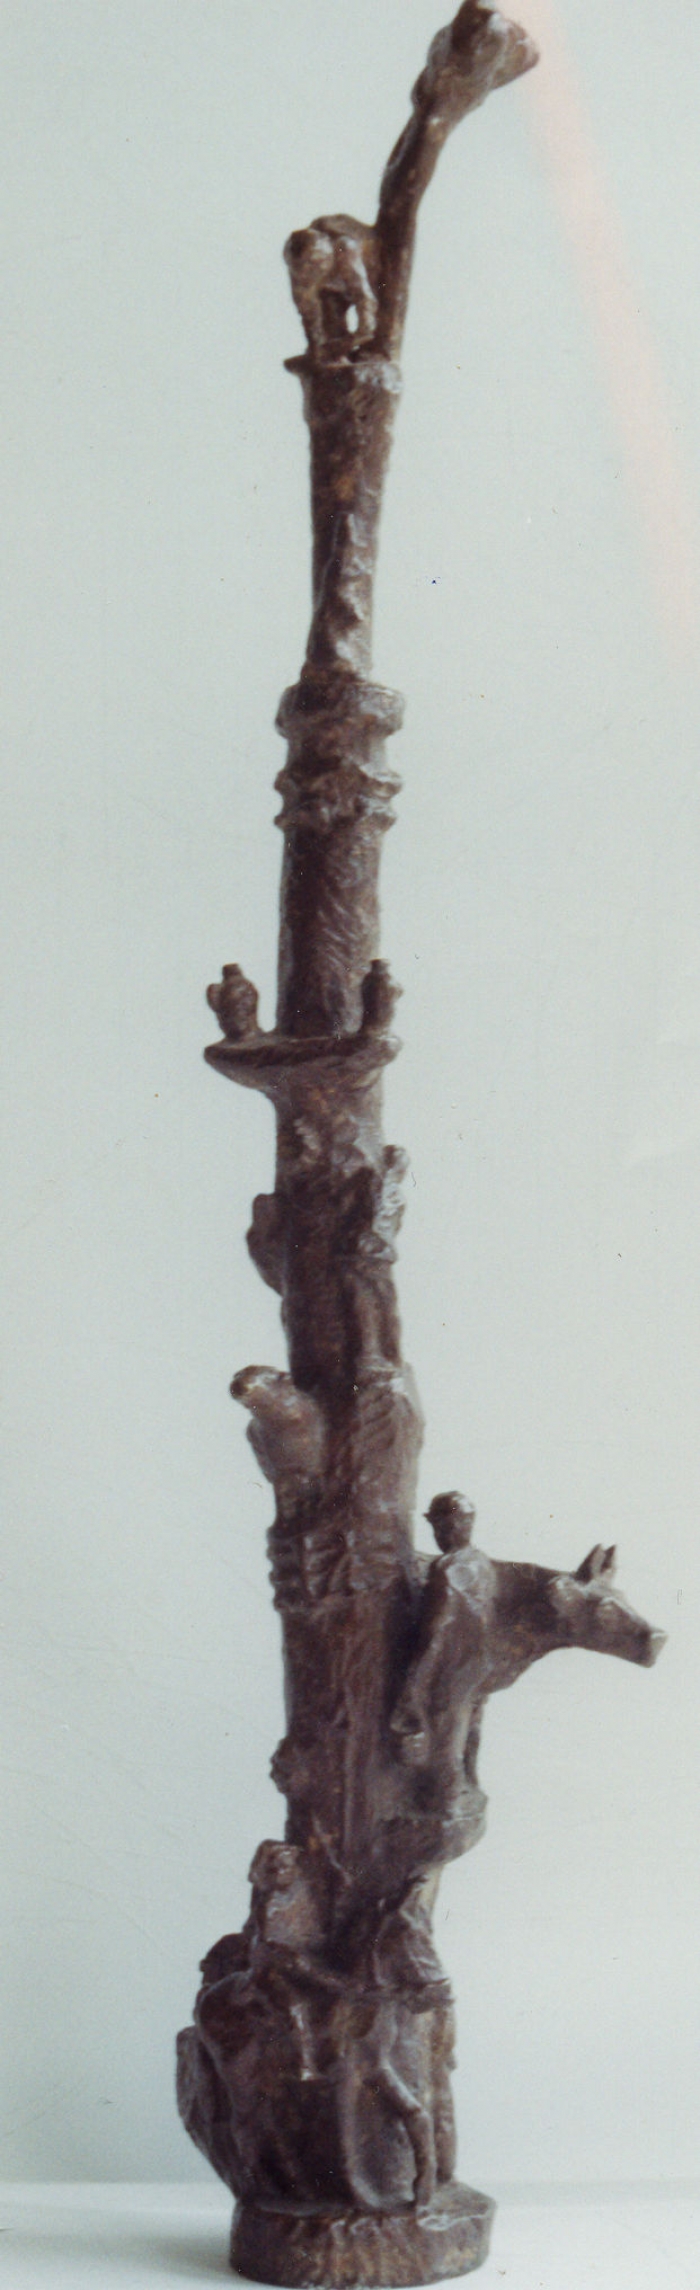 Erfgooiersboom replica in brons